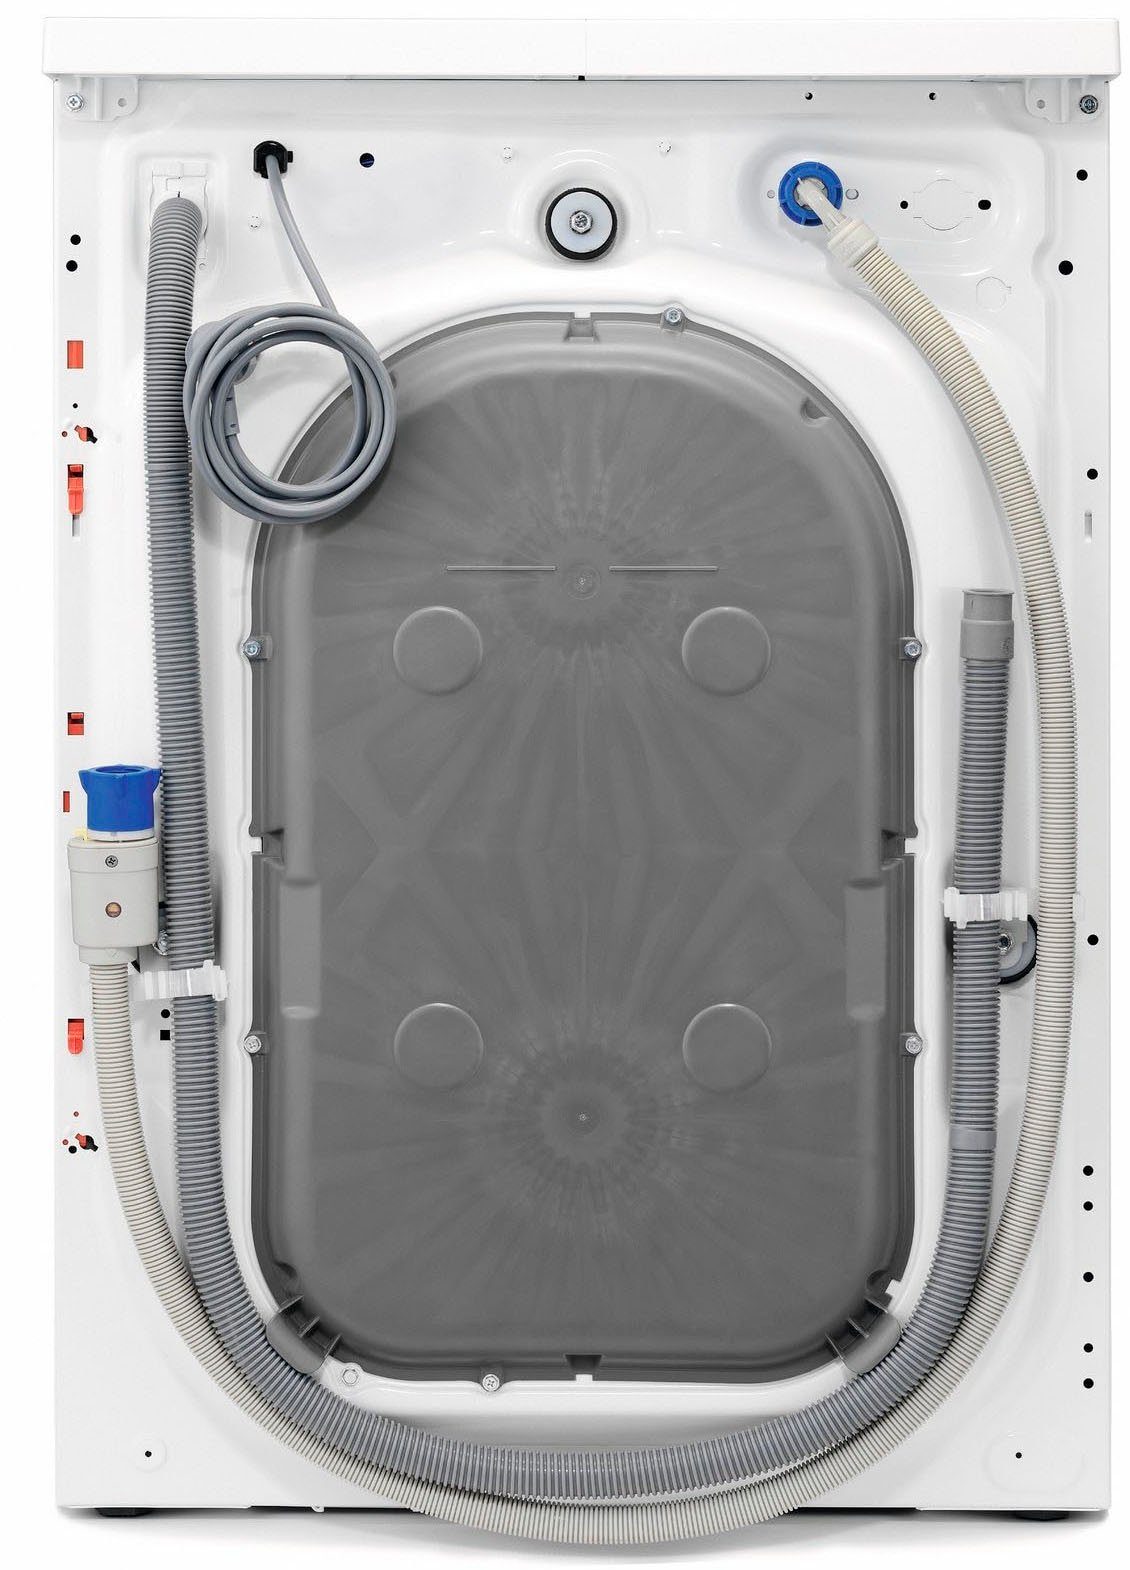 1400 Waschmaschine Wasserverbrauch kg, 10 Wifi LR7E75400, % weniger für U/min, 96 Dampf-Programm AEG & ProSteam -